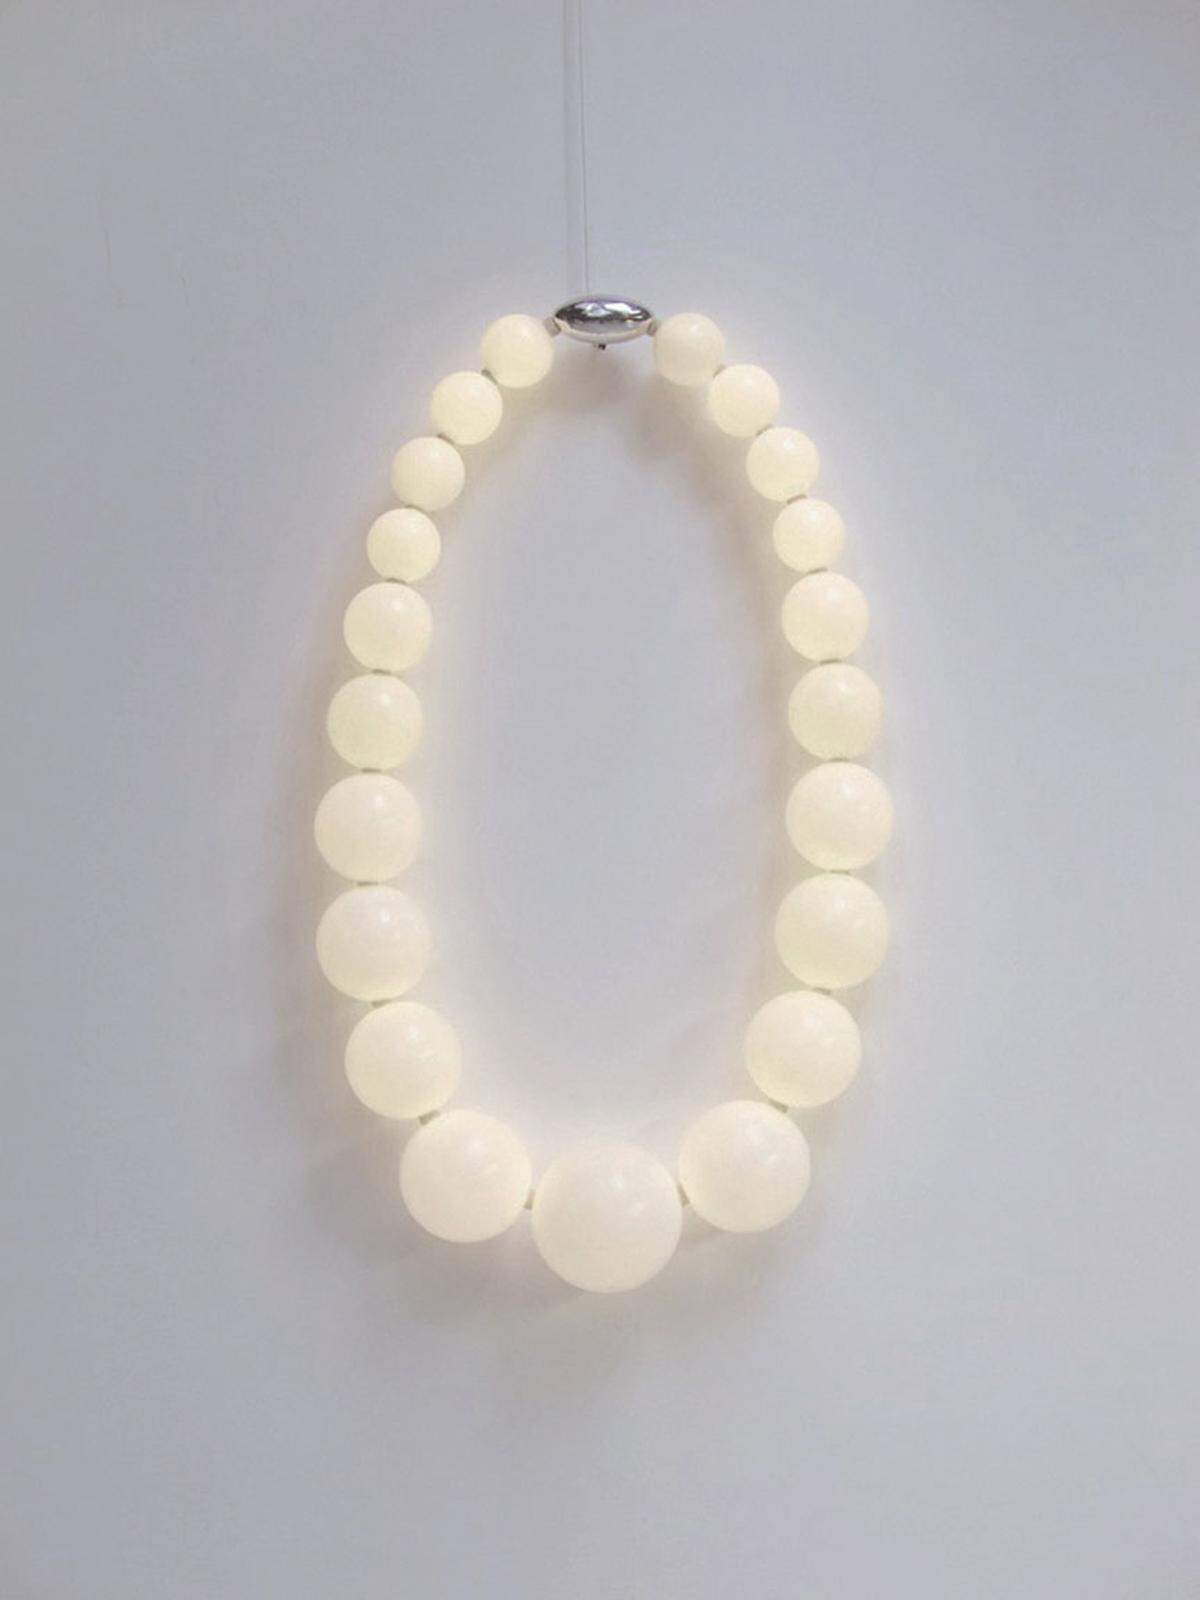 Die Designer Polka Products Designer Monica Singer und Marie Rahm haben diese elegante Perlenlampe entworfen.